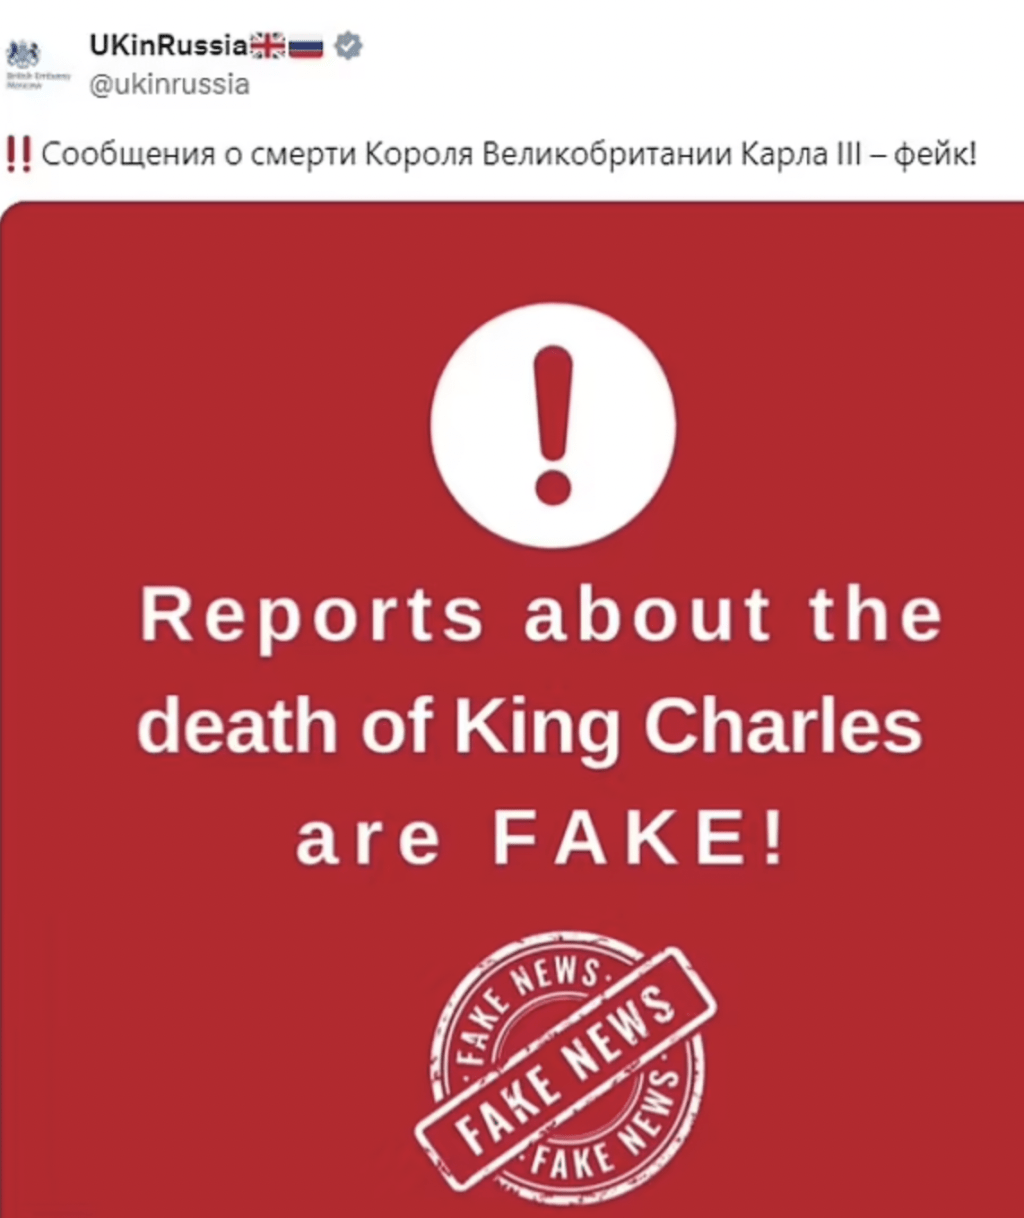 英国驻俄罗斯大使馆在社交平台专页以英语和俄语澄清，有关查理斯已死的报道全属虚假。